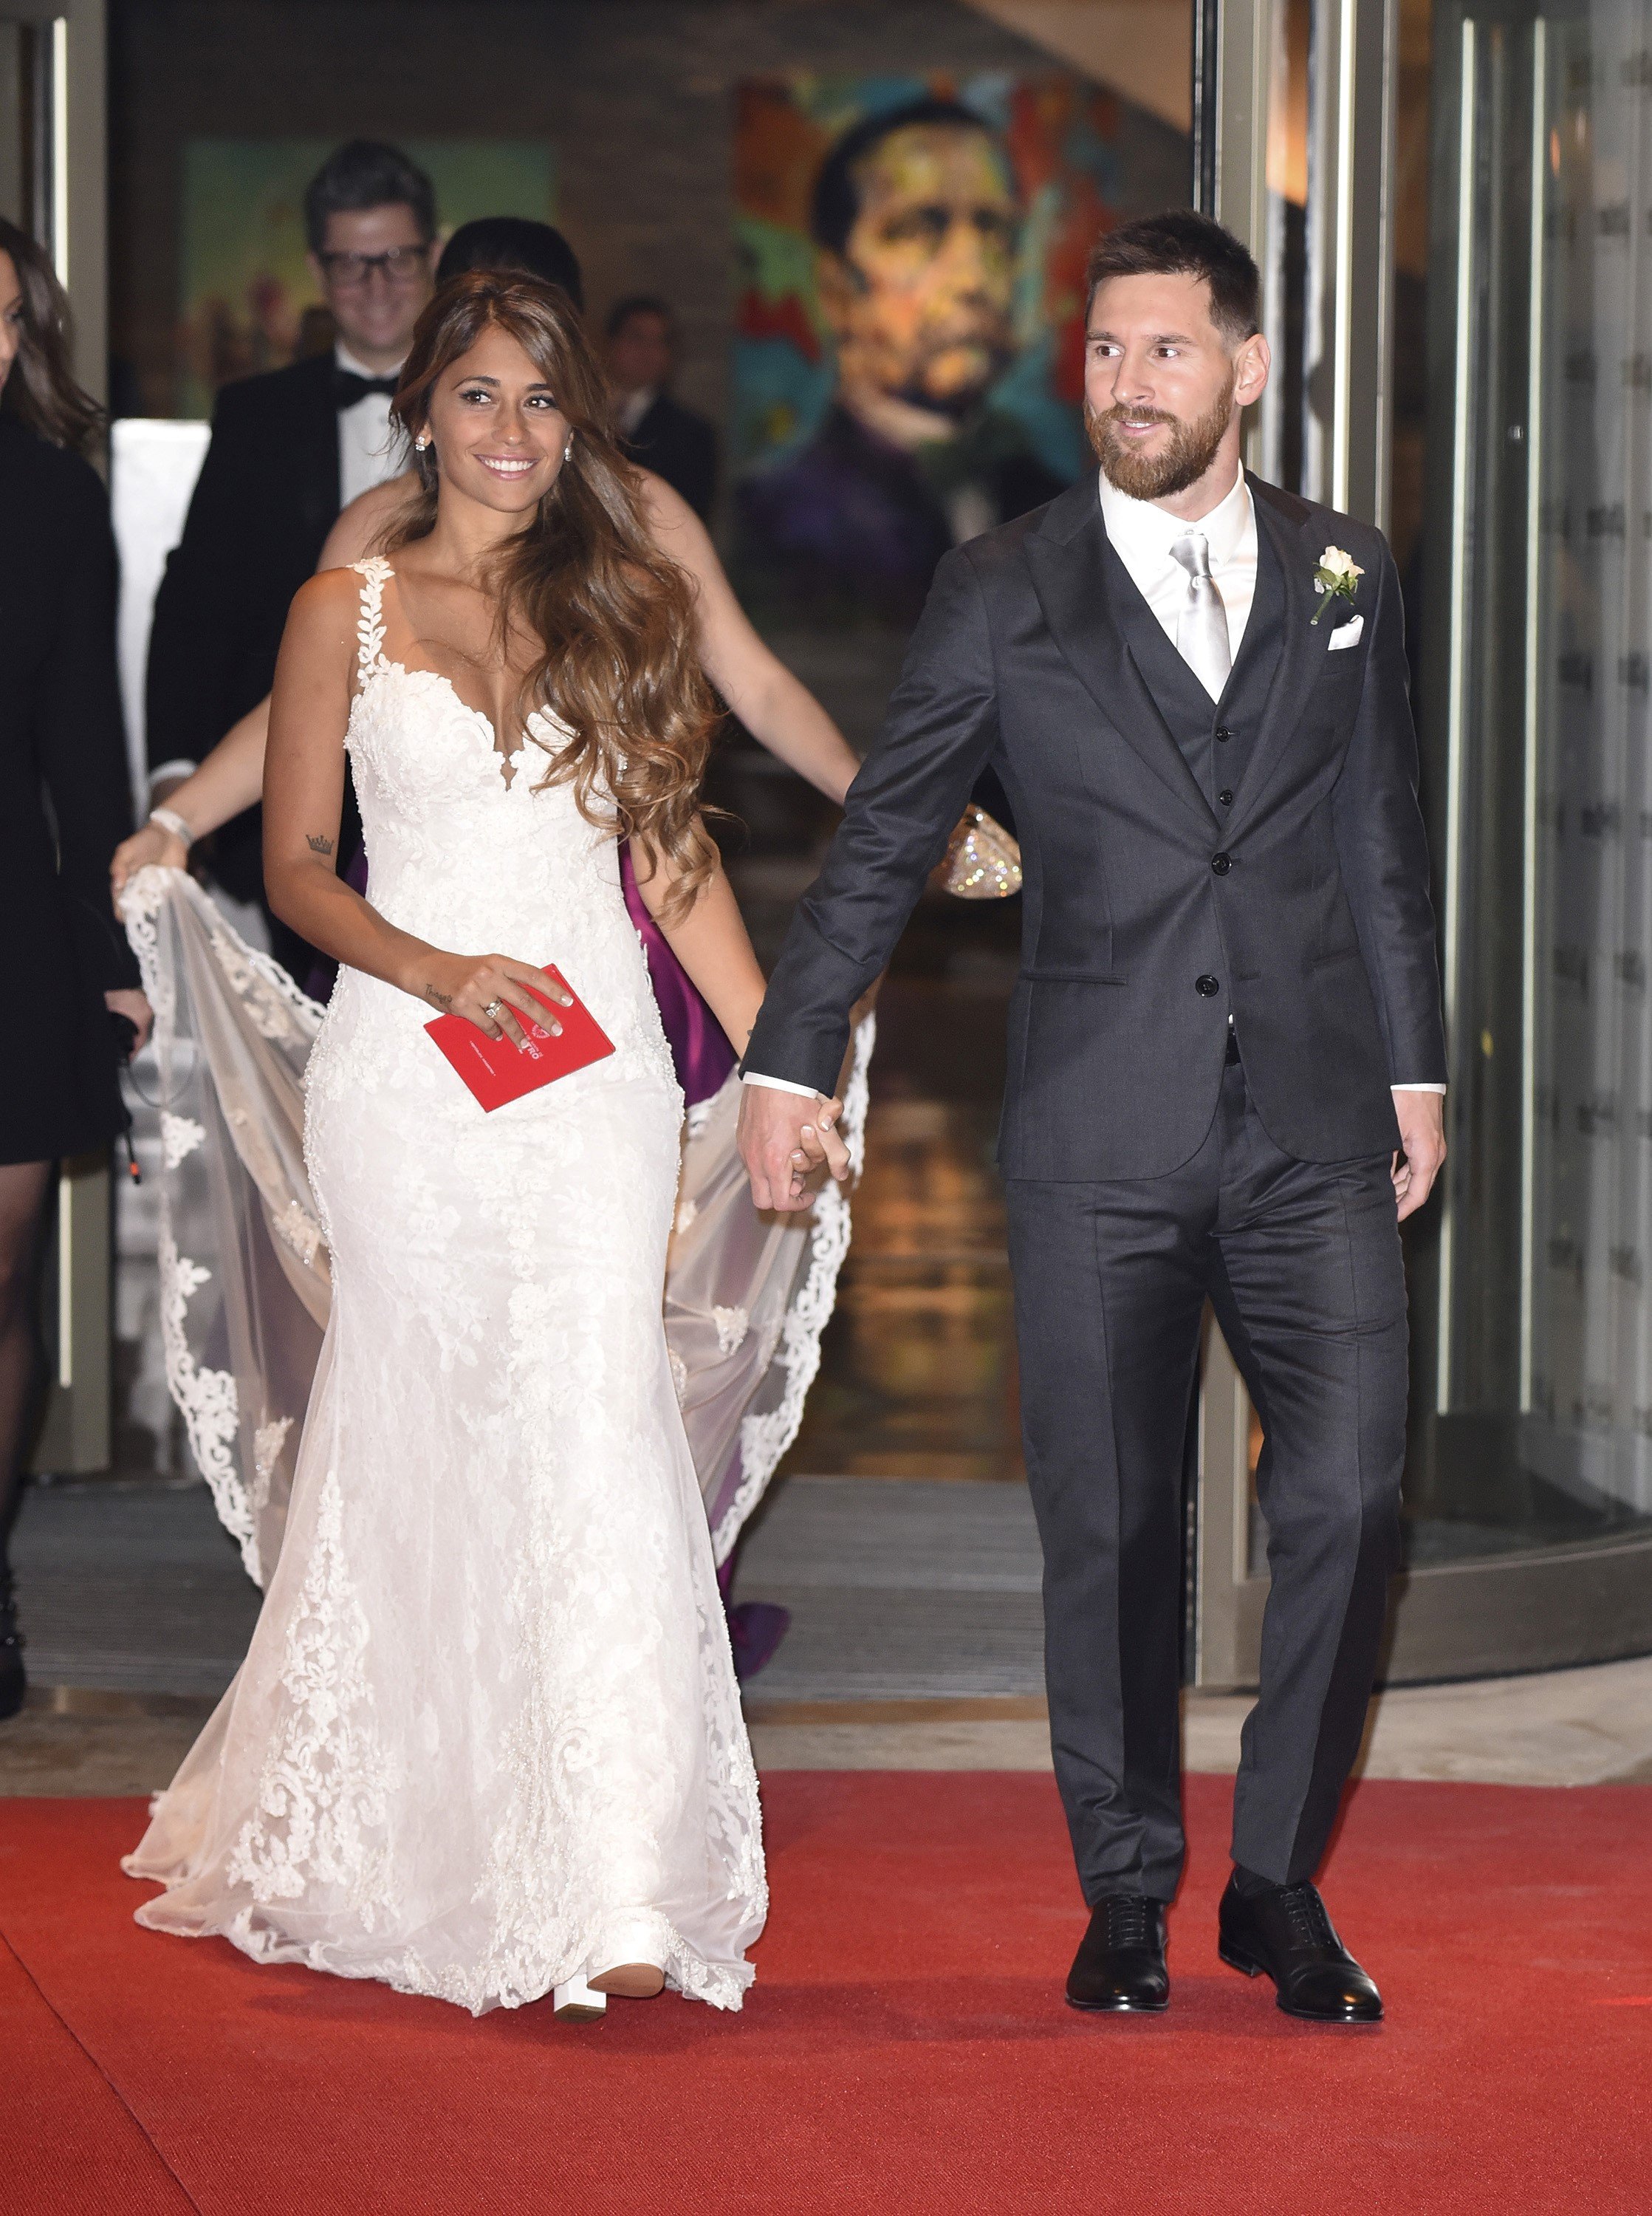 El pobre regal de boda dels convidats de Messi: menys de 50€ per persona